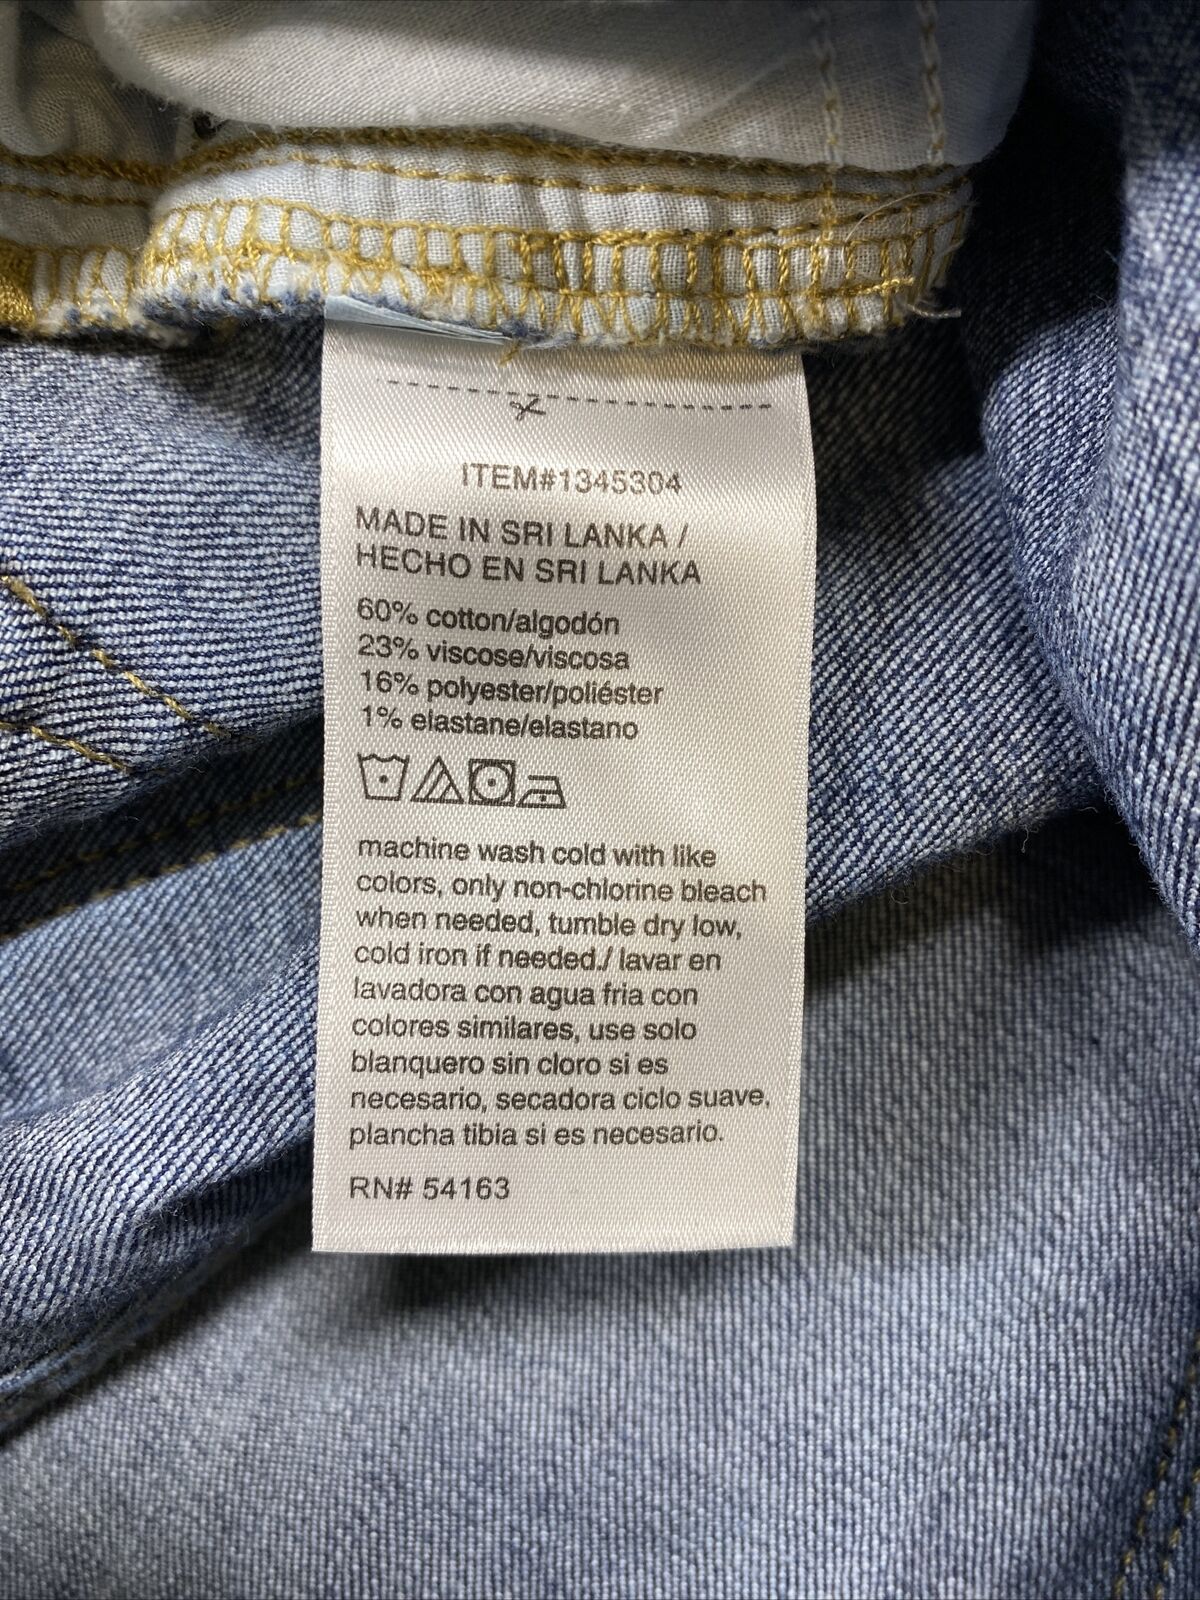 Calvin Klein Jeans elásticos al tobillo ajustados con lavado oscuro para mujer - 10